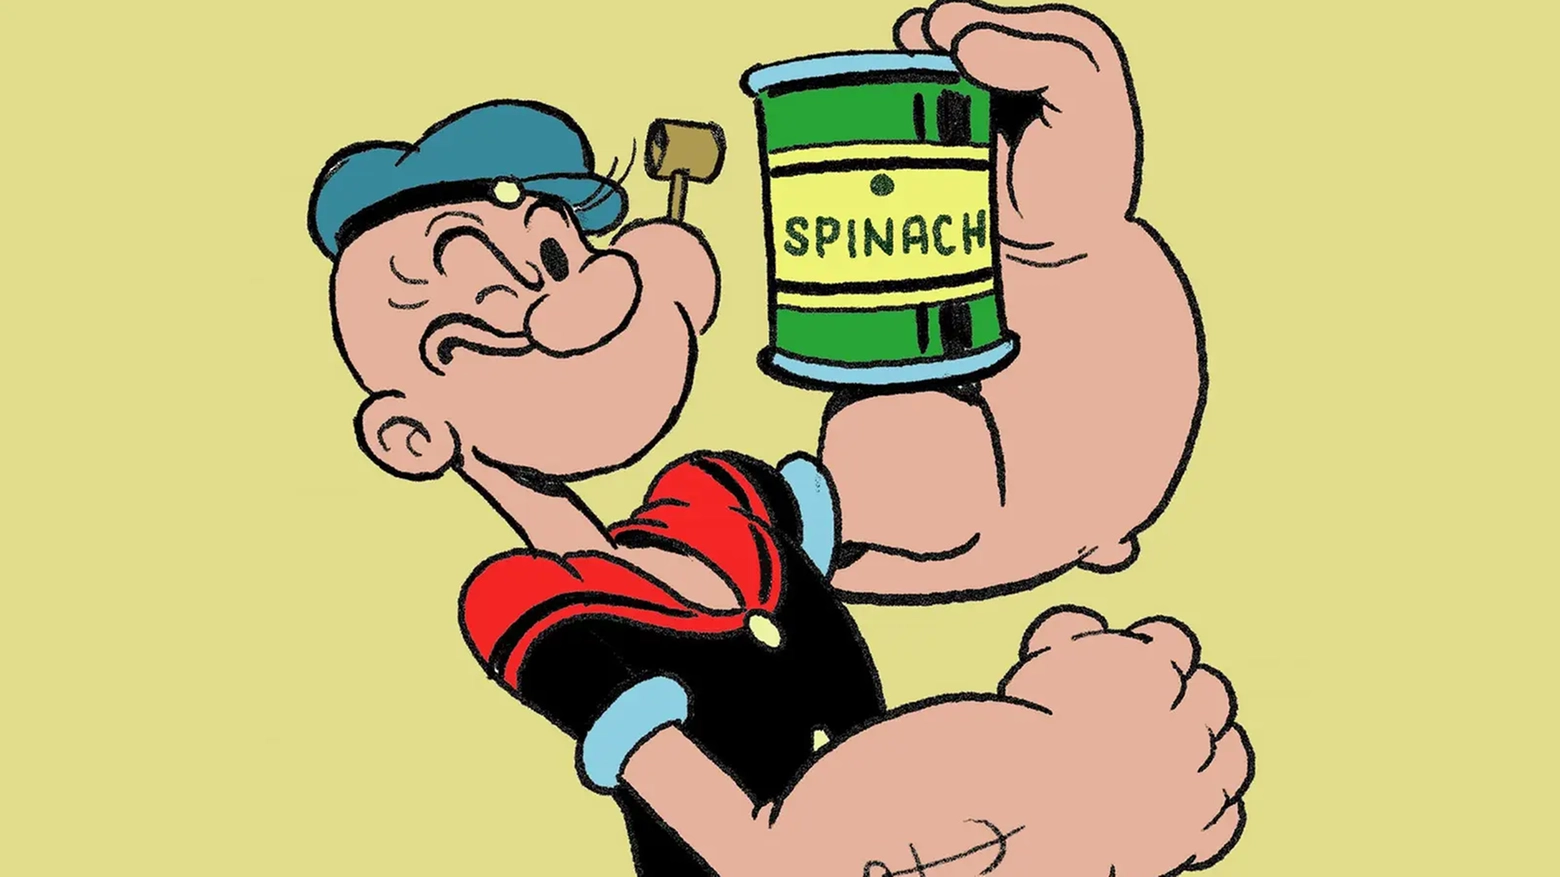 L'esempio di marketing più famoso dei cartoni animati: Braccio di Ferro e i suoi spinaci (Instagram)